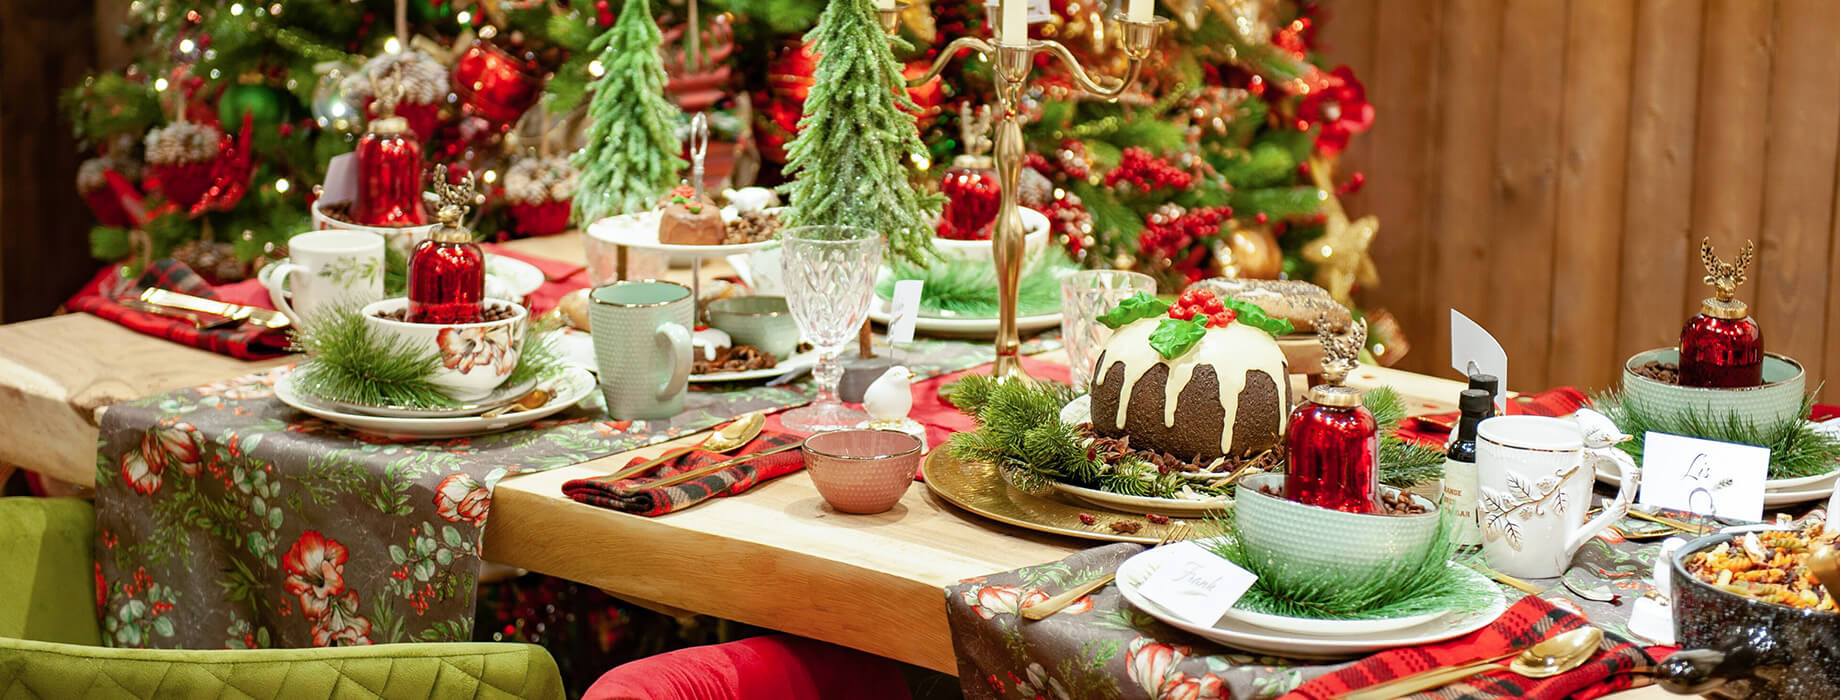 decoracin de mesa navidea rojo y dorado